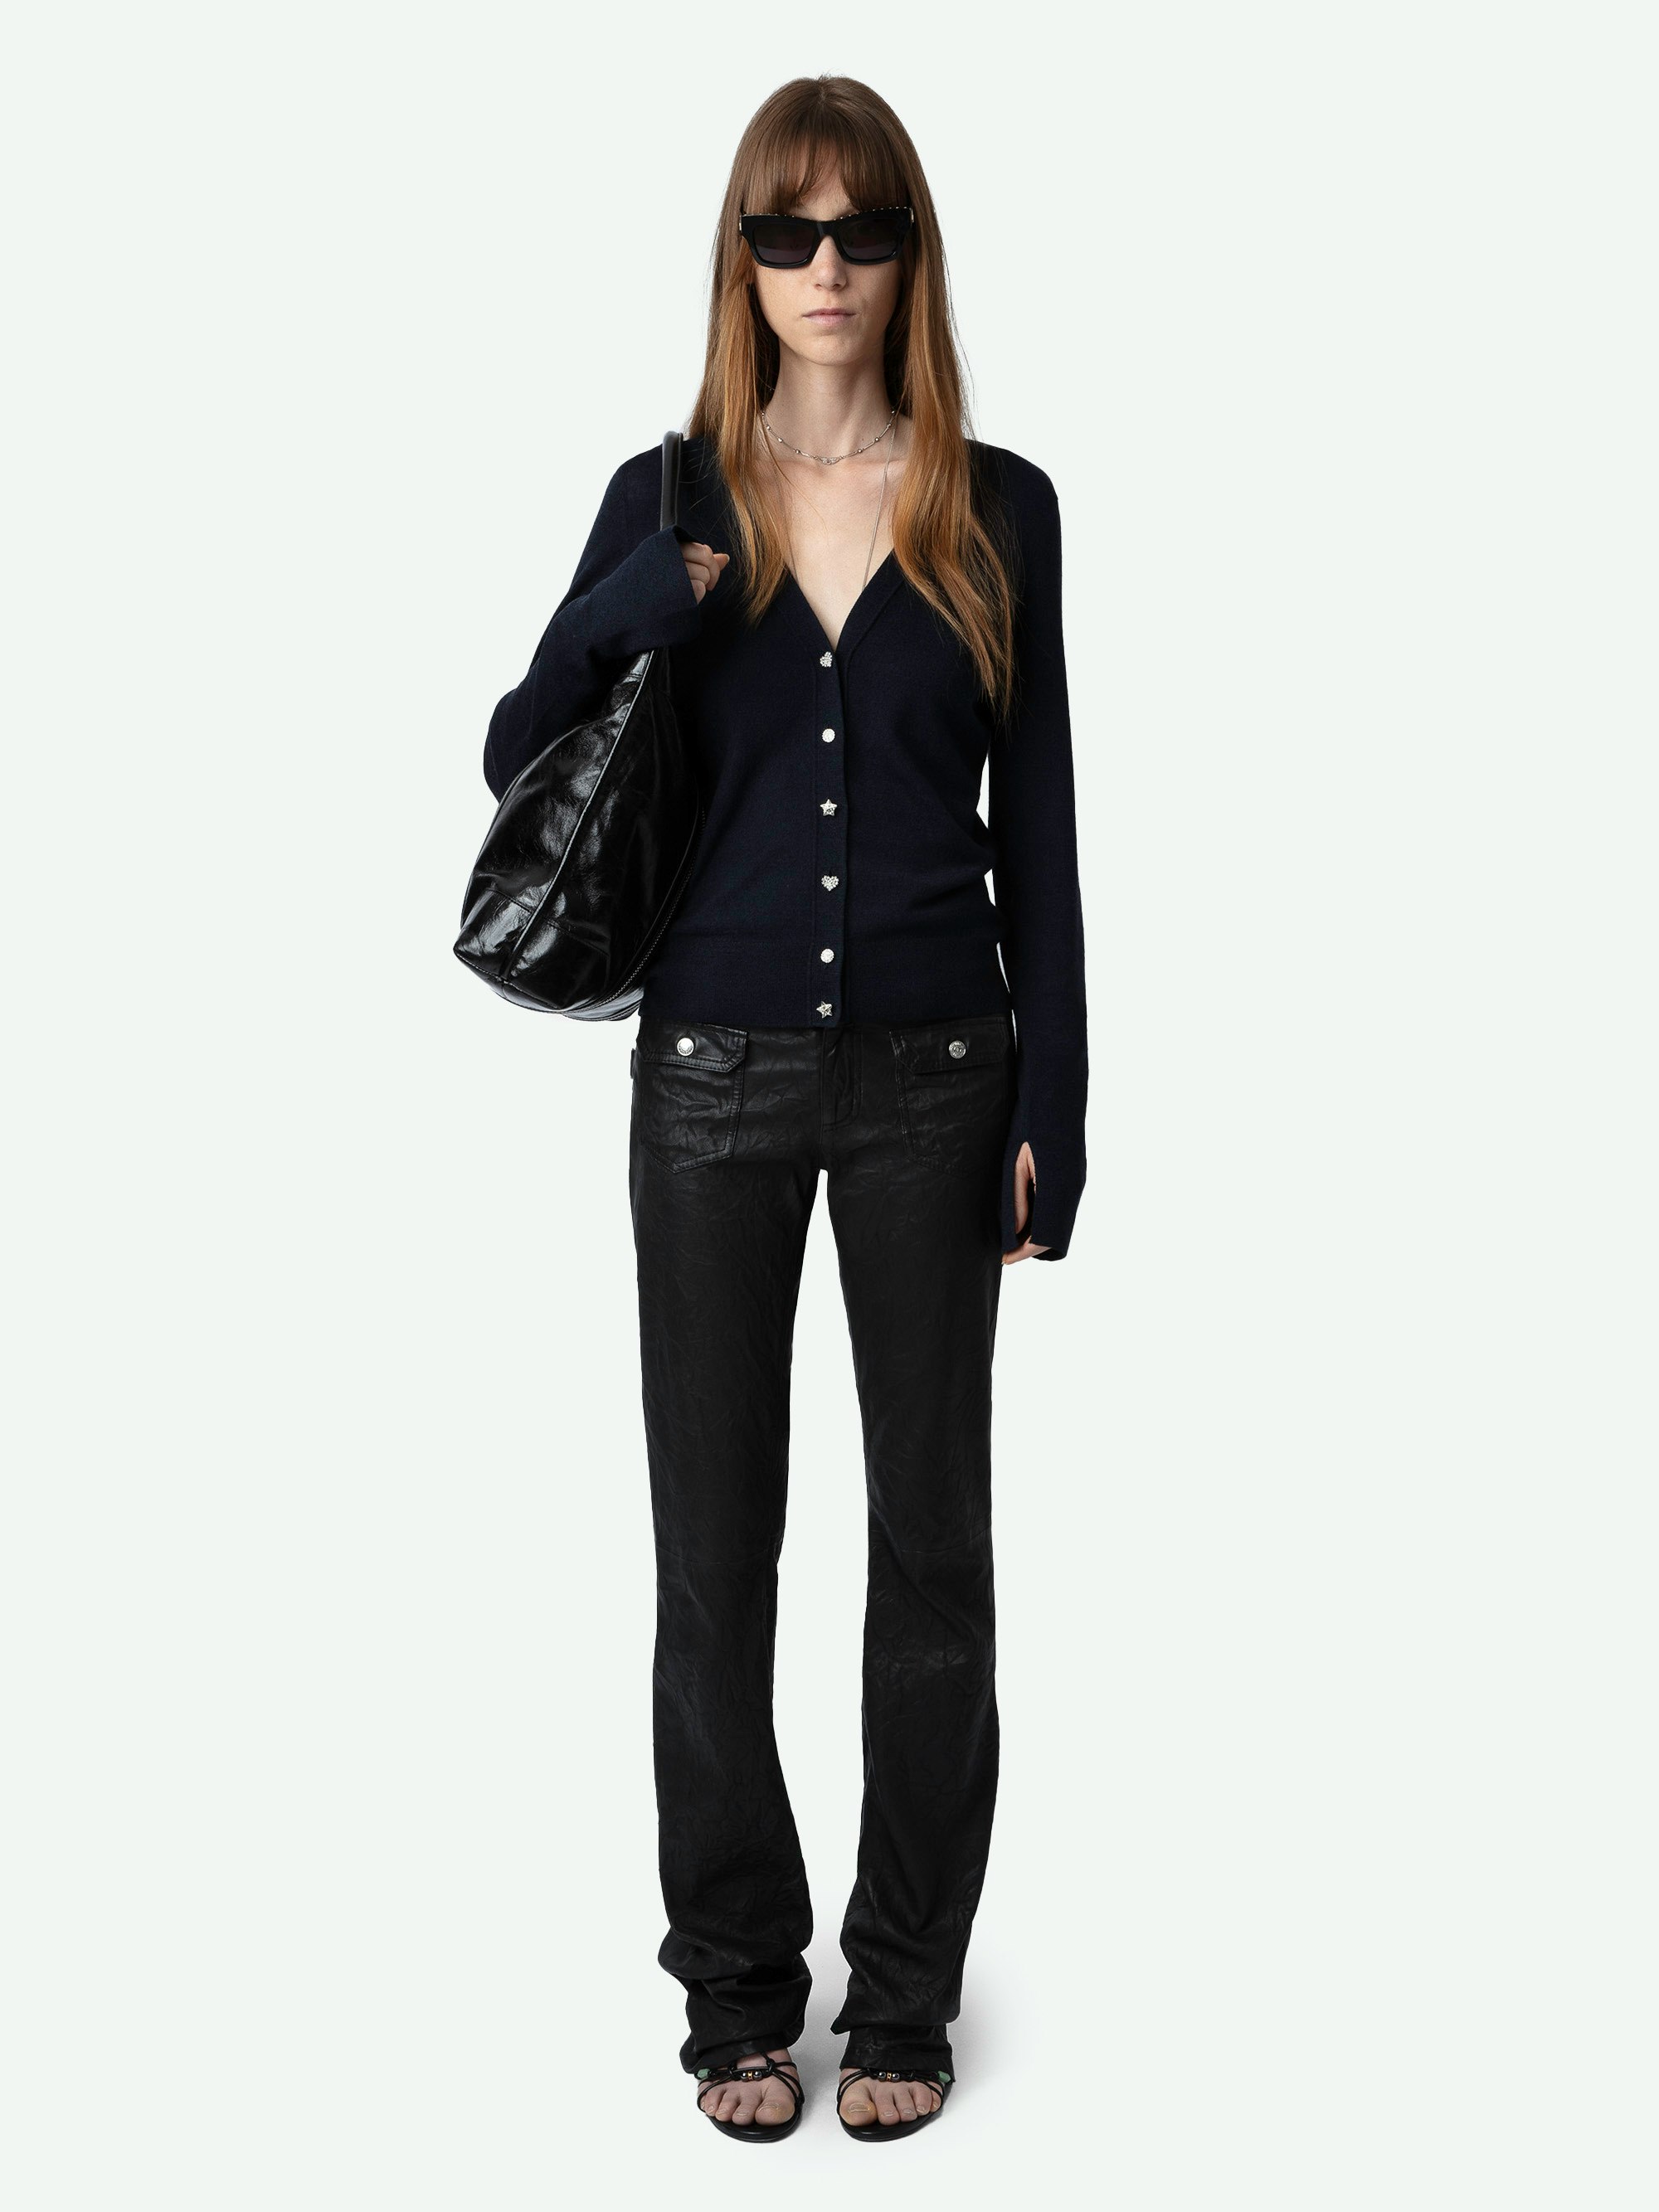 Cardigan Jemma 100% Lana Merino - Cardigan in 100% lana merino blu navy con maniche lunghe, bottoni in strass e ali ricamate sul retro.